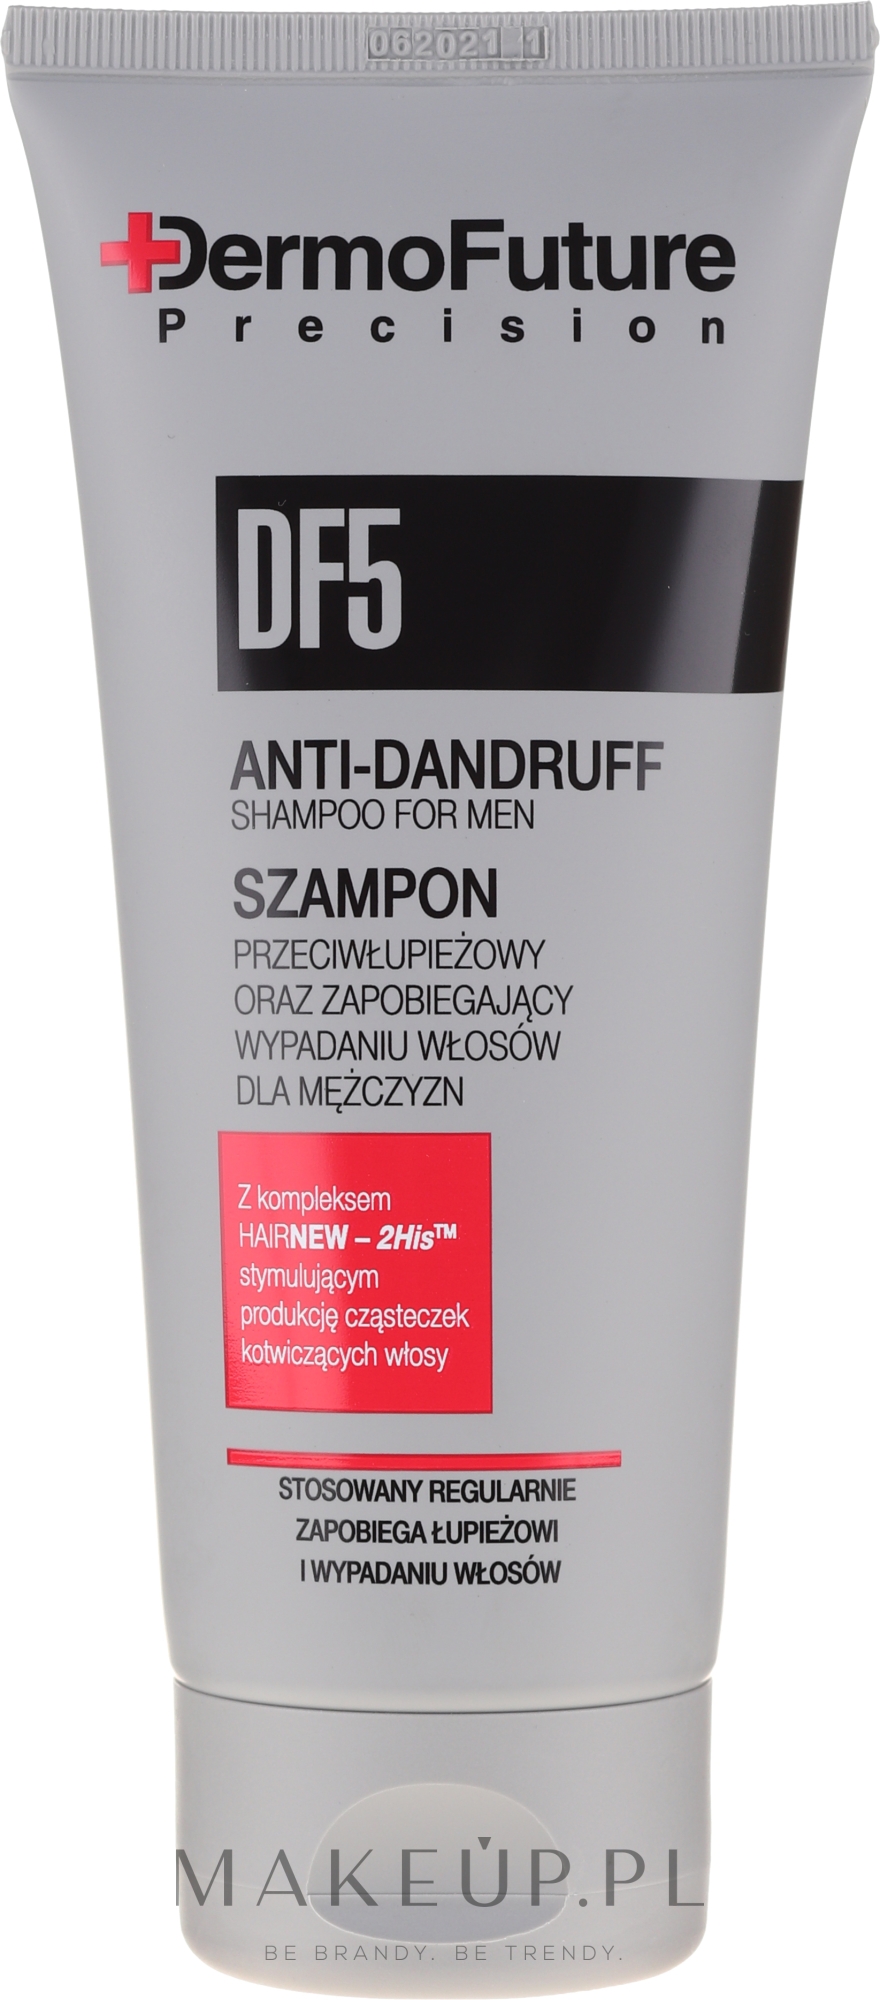 df 5 szampon opinie